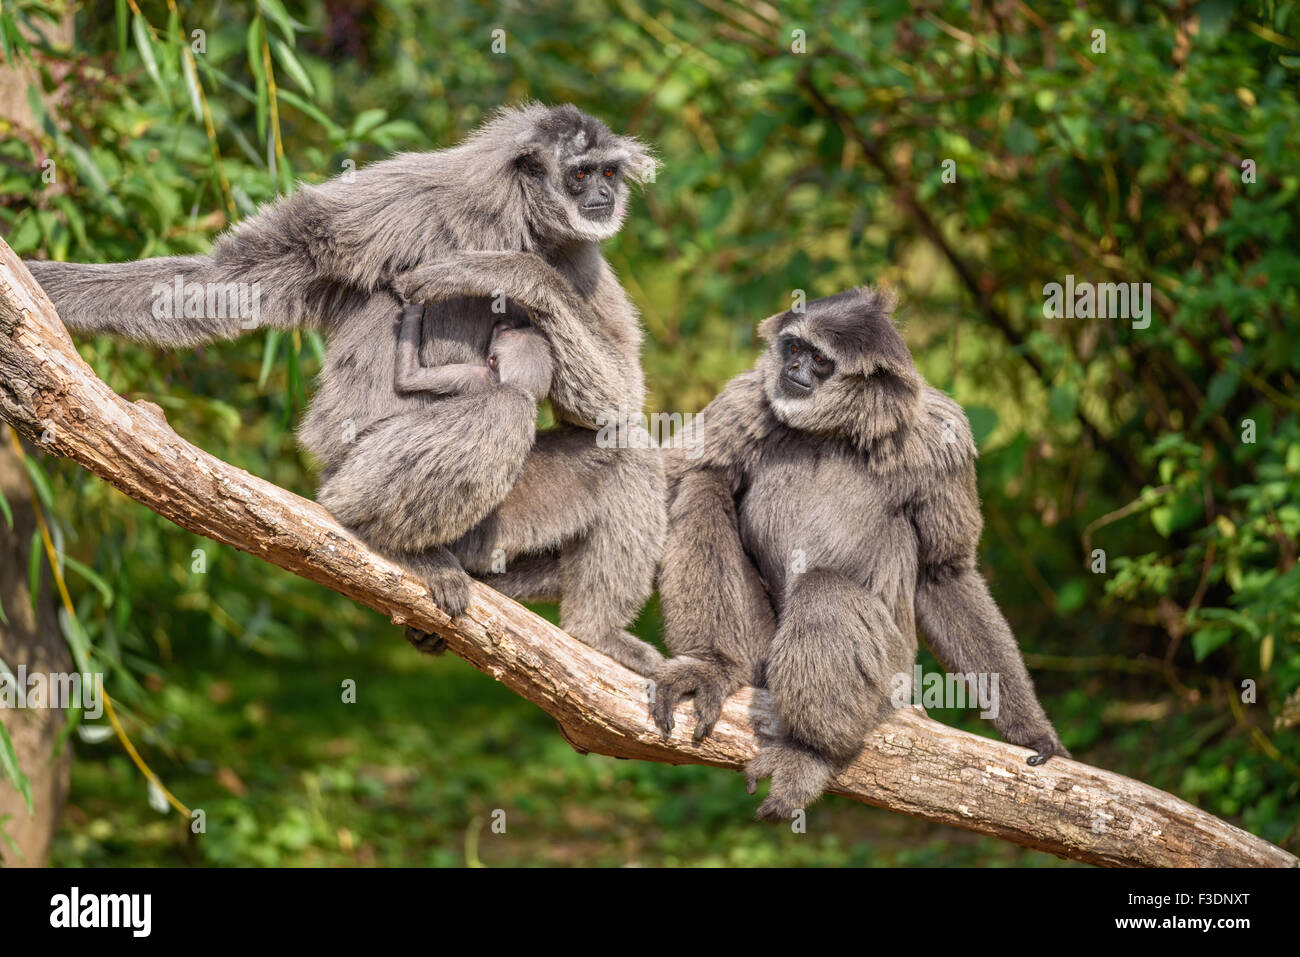 Famille de gibbons argenté (Hylobates moloch) avec un nouveau-né. Le gibbon argenté se classe parmi les espèces les plus menacées. Banque D'Images